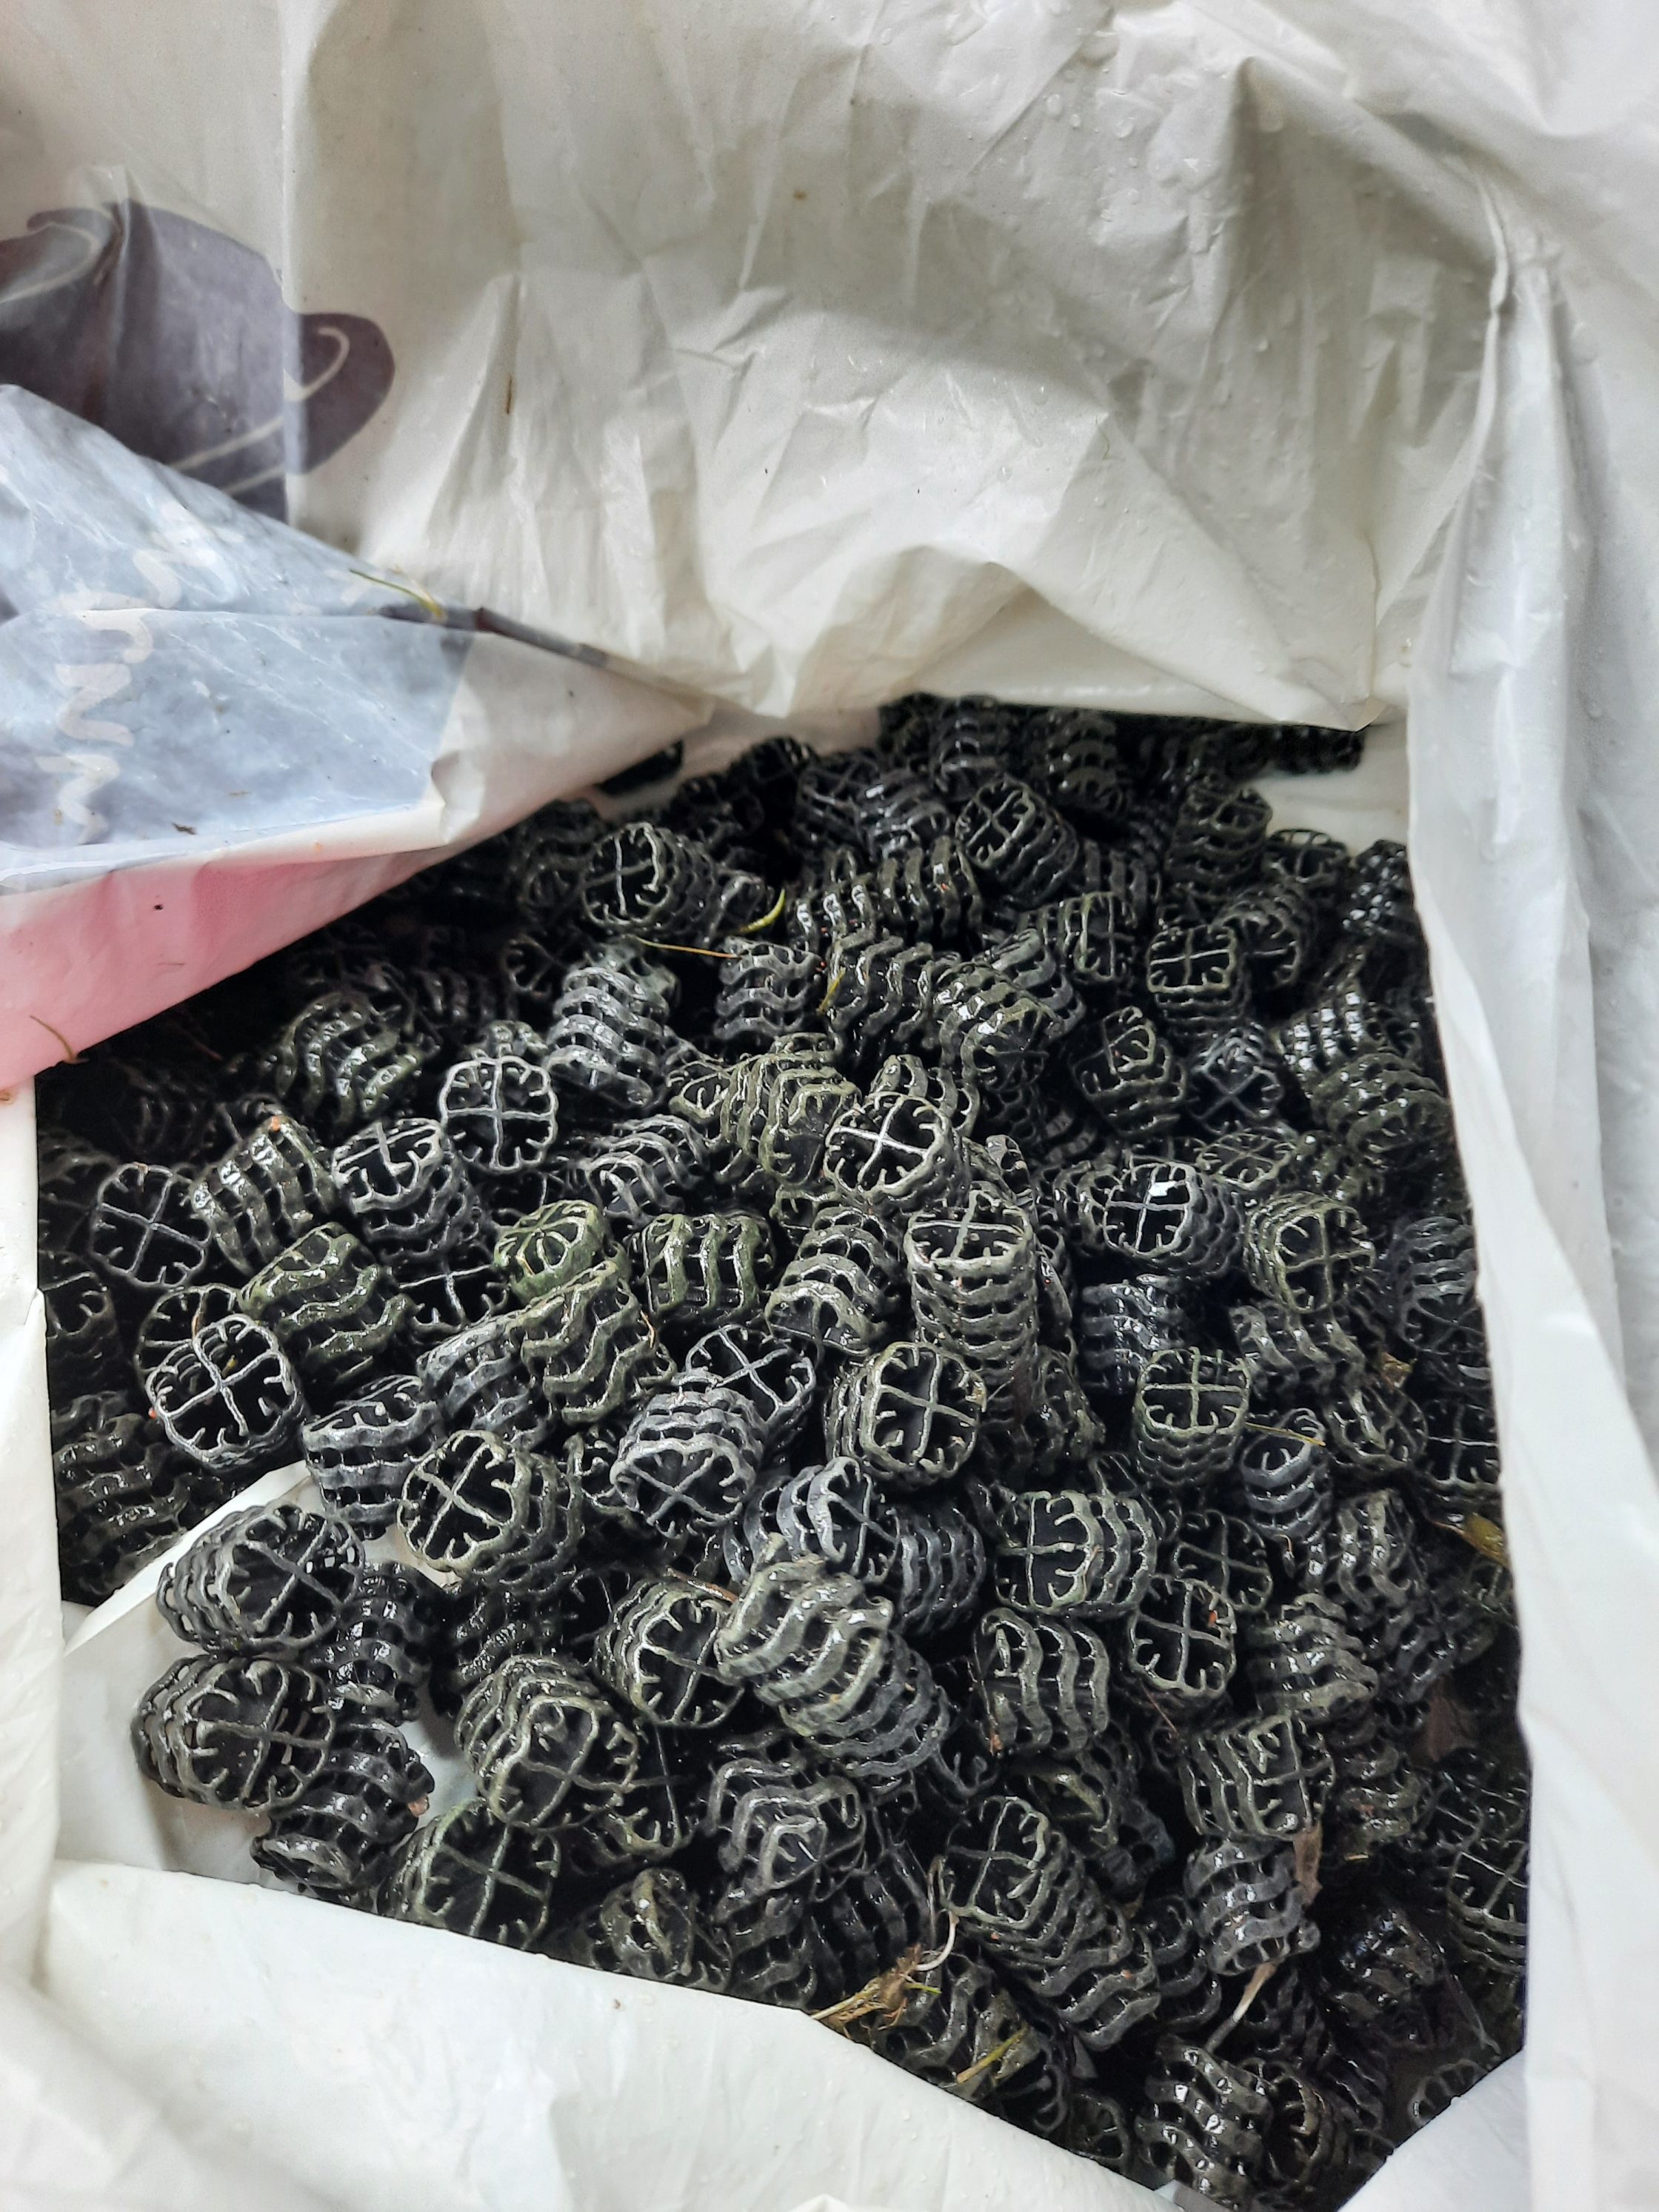 Påse full med filterbollar av svart plast